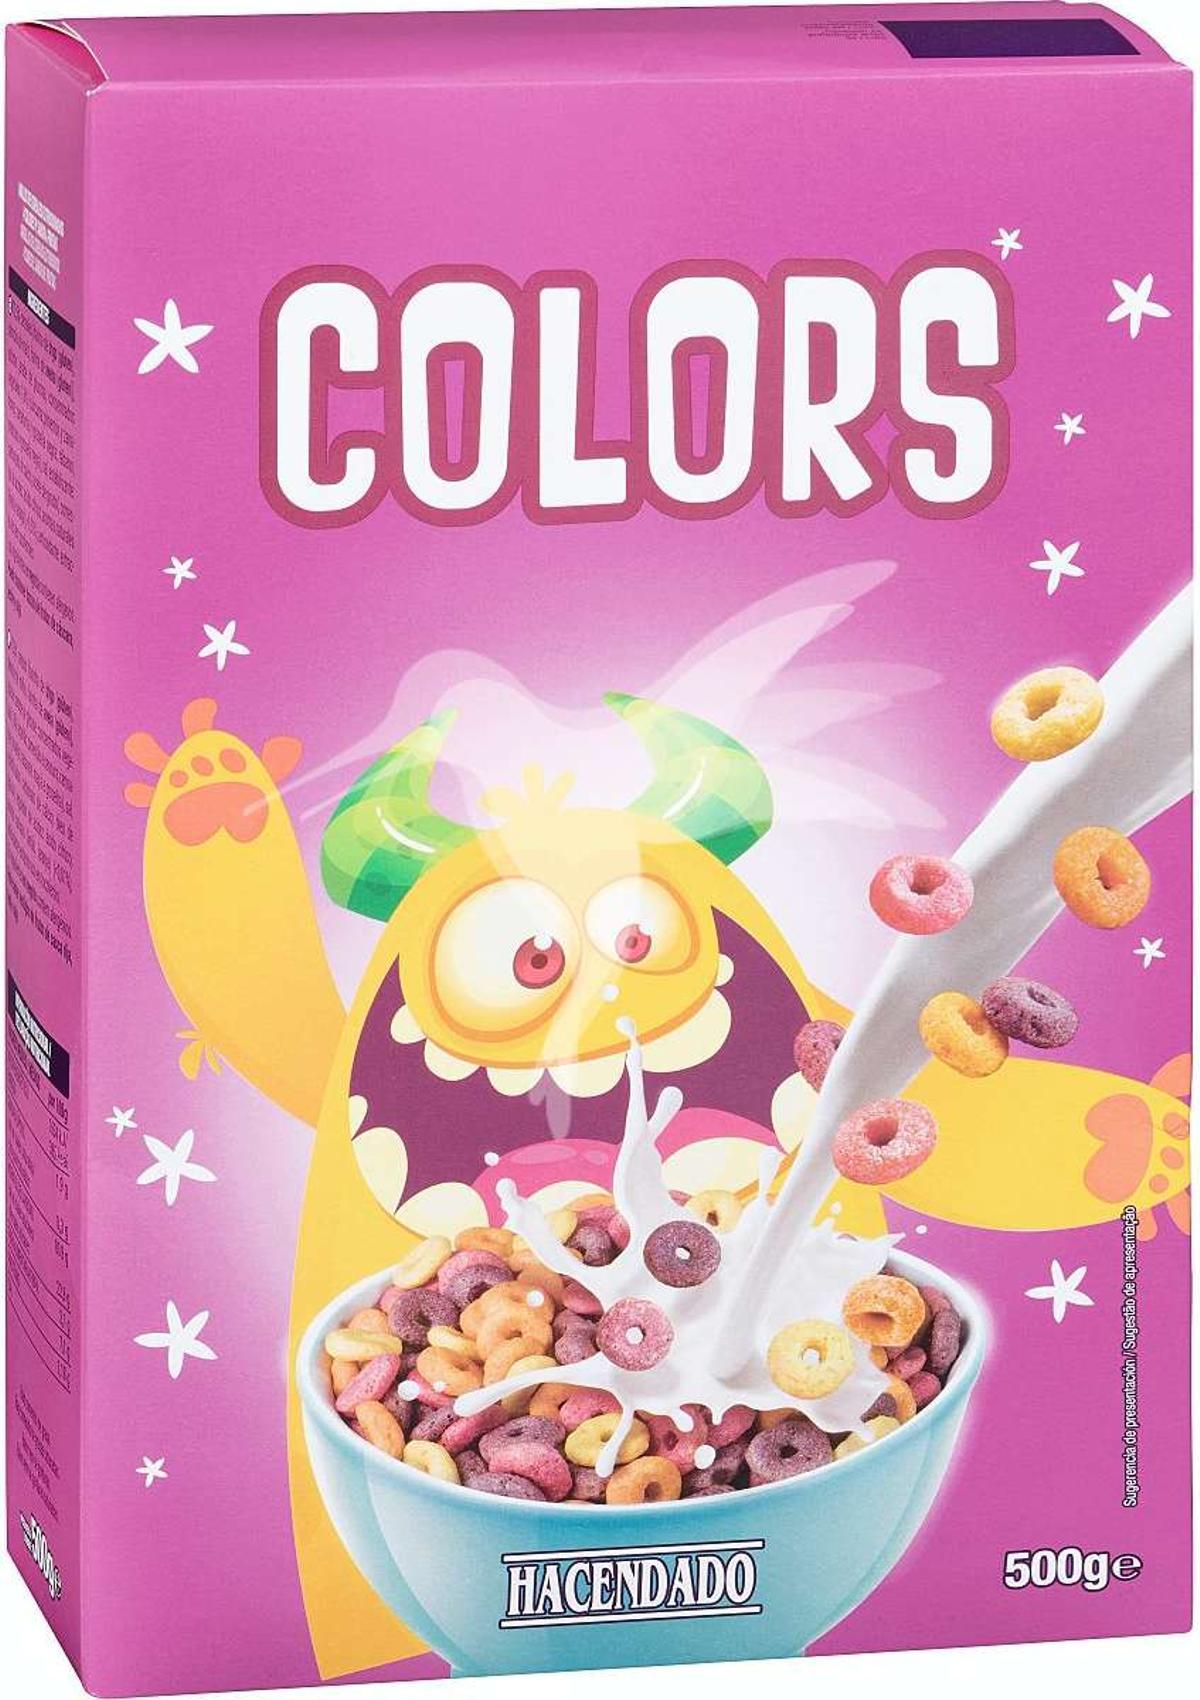 Los Cereales Aros Colors Fruta han sido retirados de Mercadona.